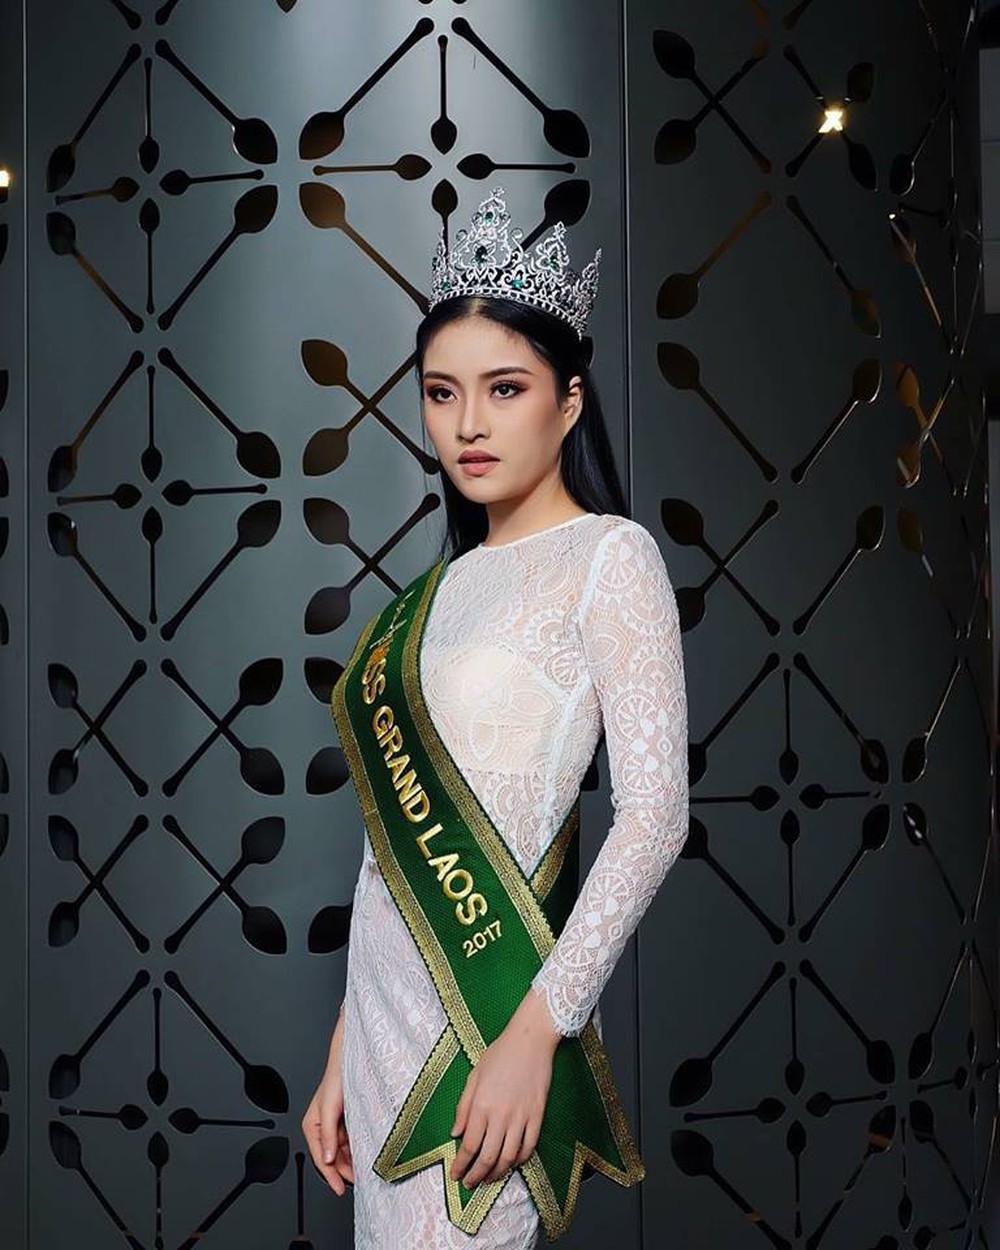 Hoa hậu Quốc tế Hòa bình tại VN: Ngỡ ngàng nhan sắc đẹp tựa minh tinh của Hoa hậu Lào - Ảnh 7.